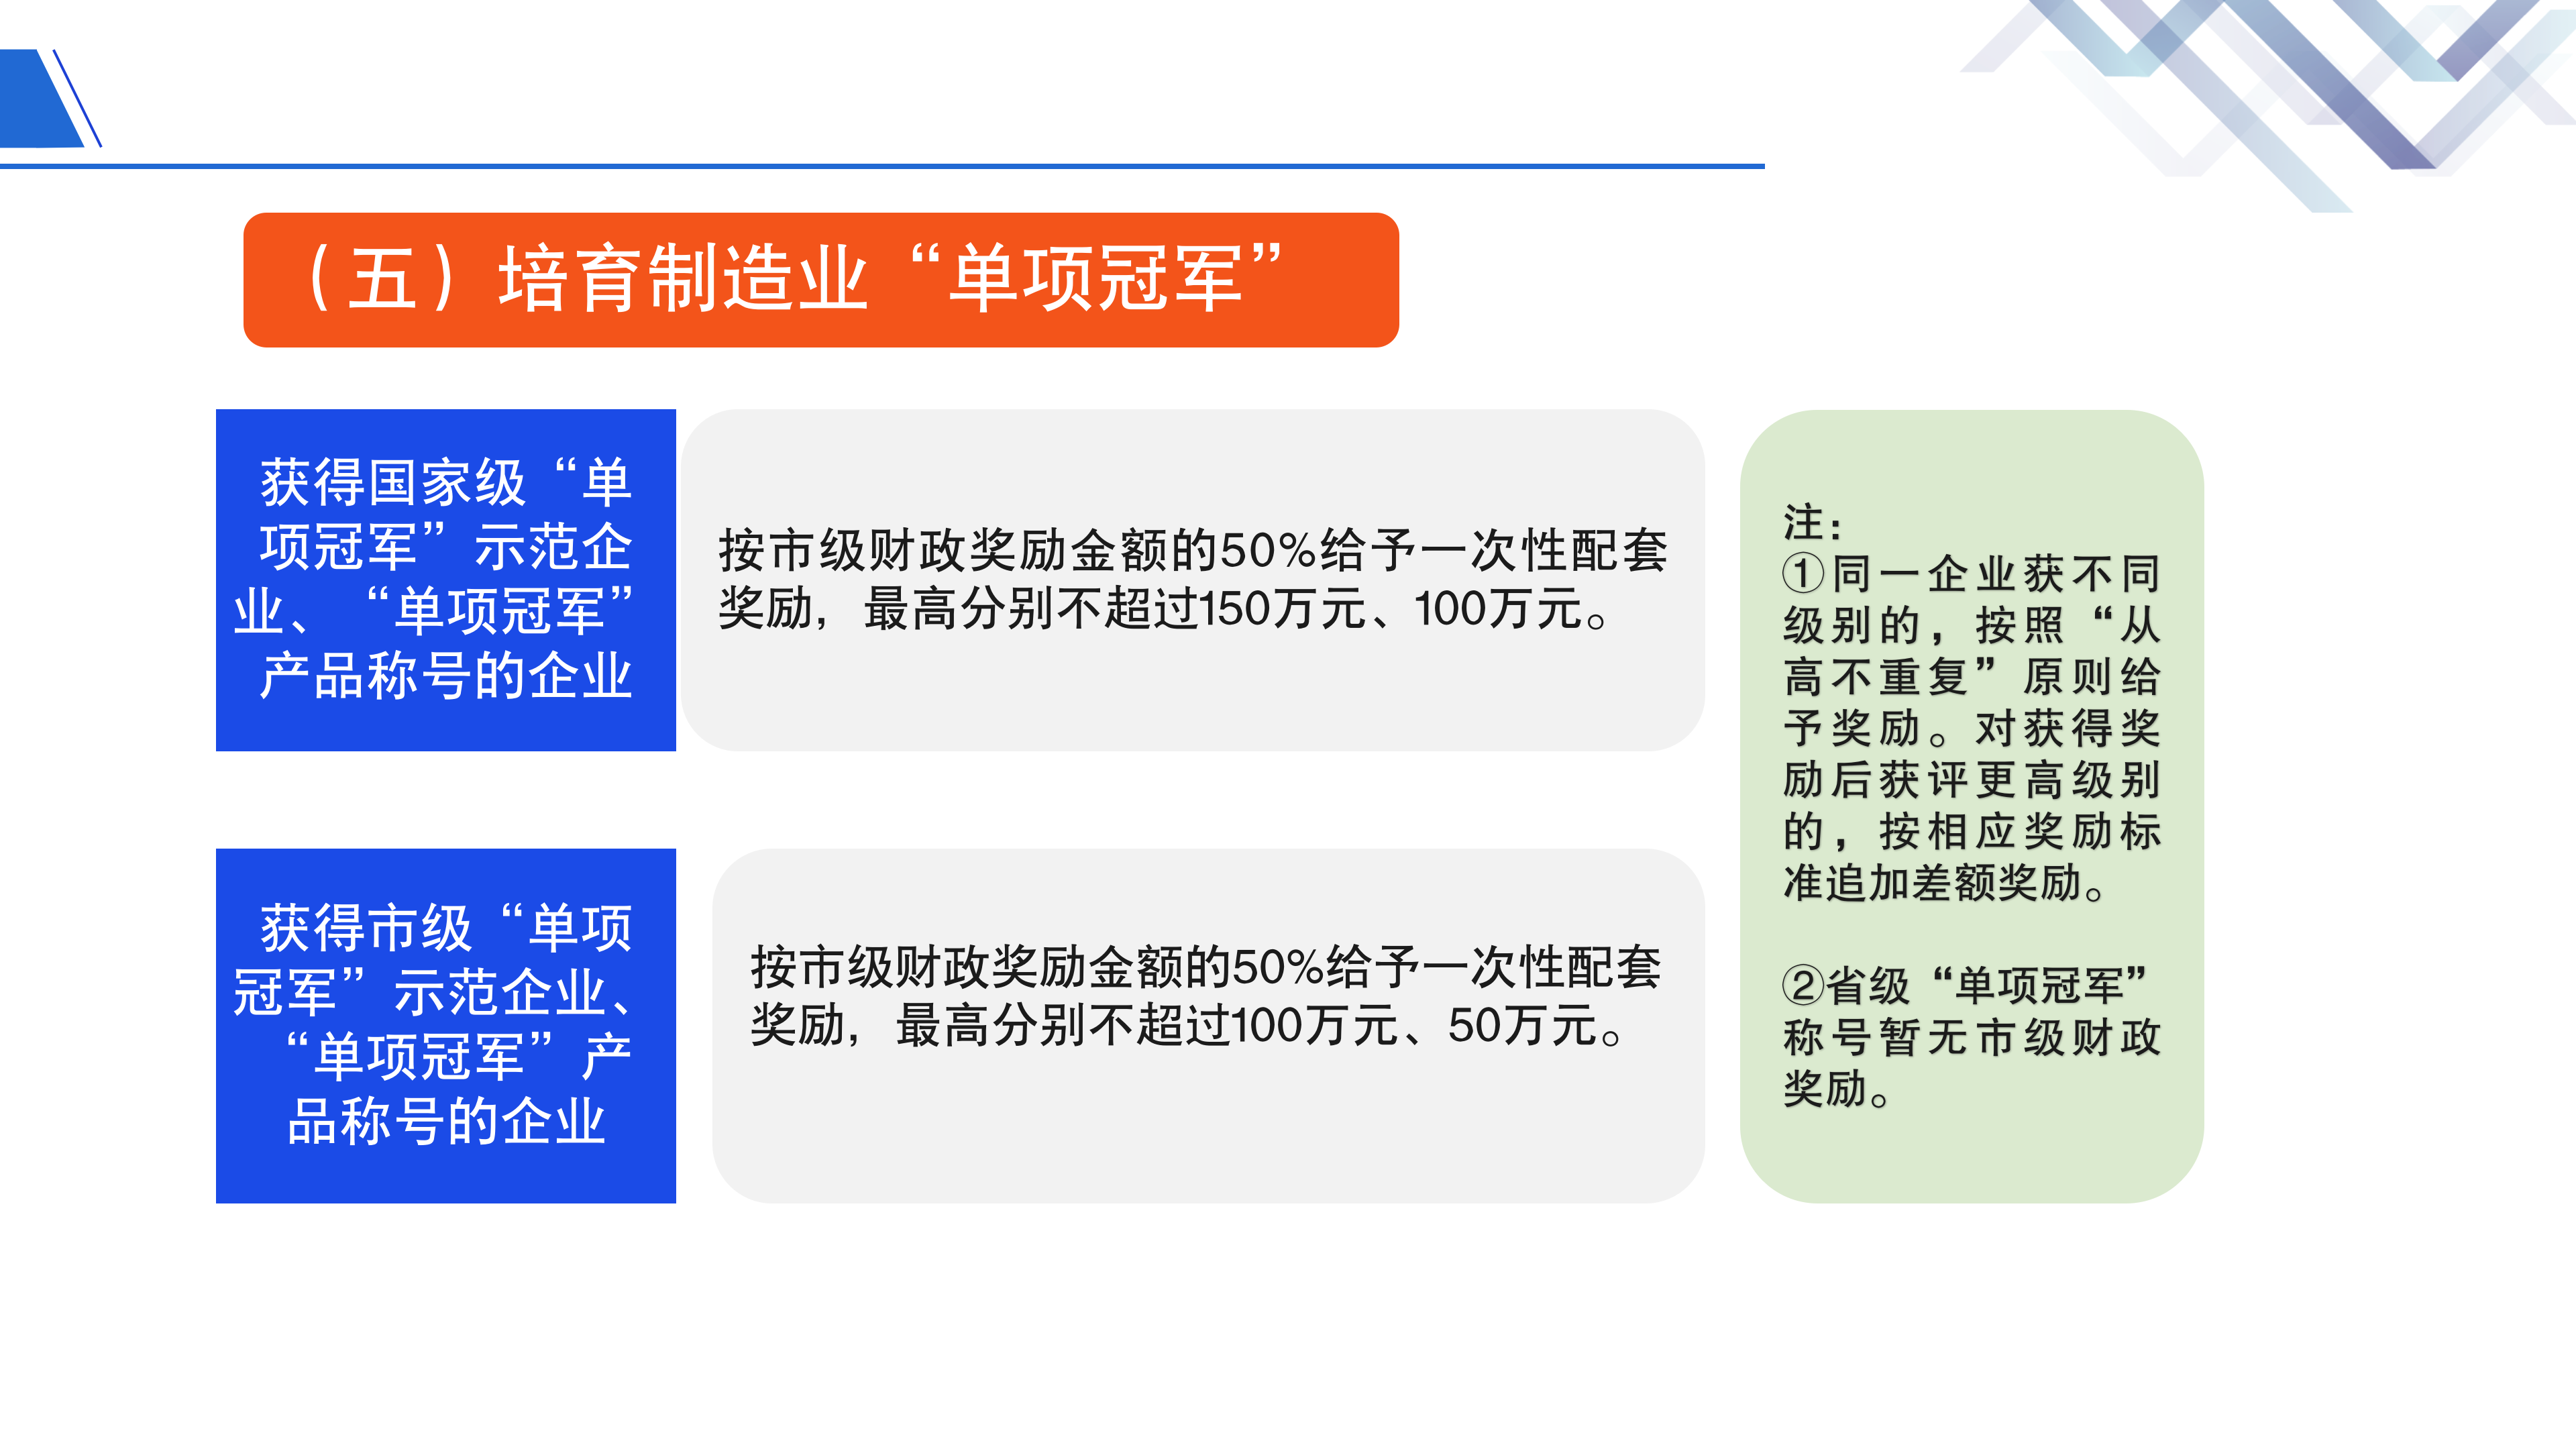 《深圳市大鹏新区关于促进制造业高质量发展的若干措施》政策解读_13.png